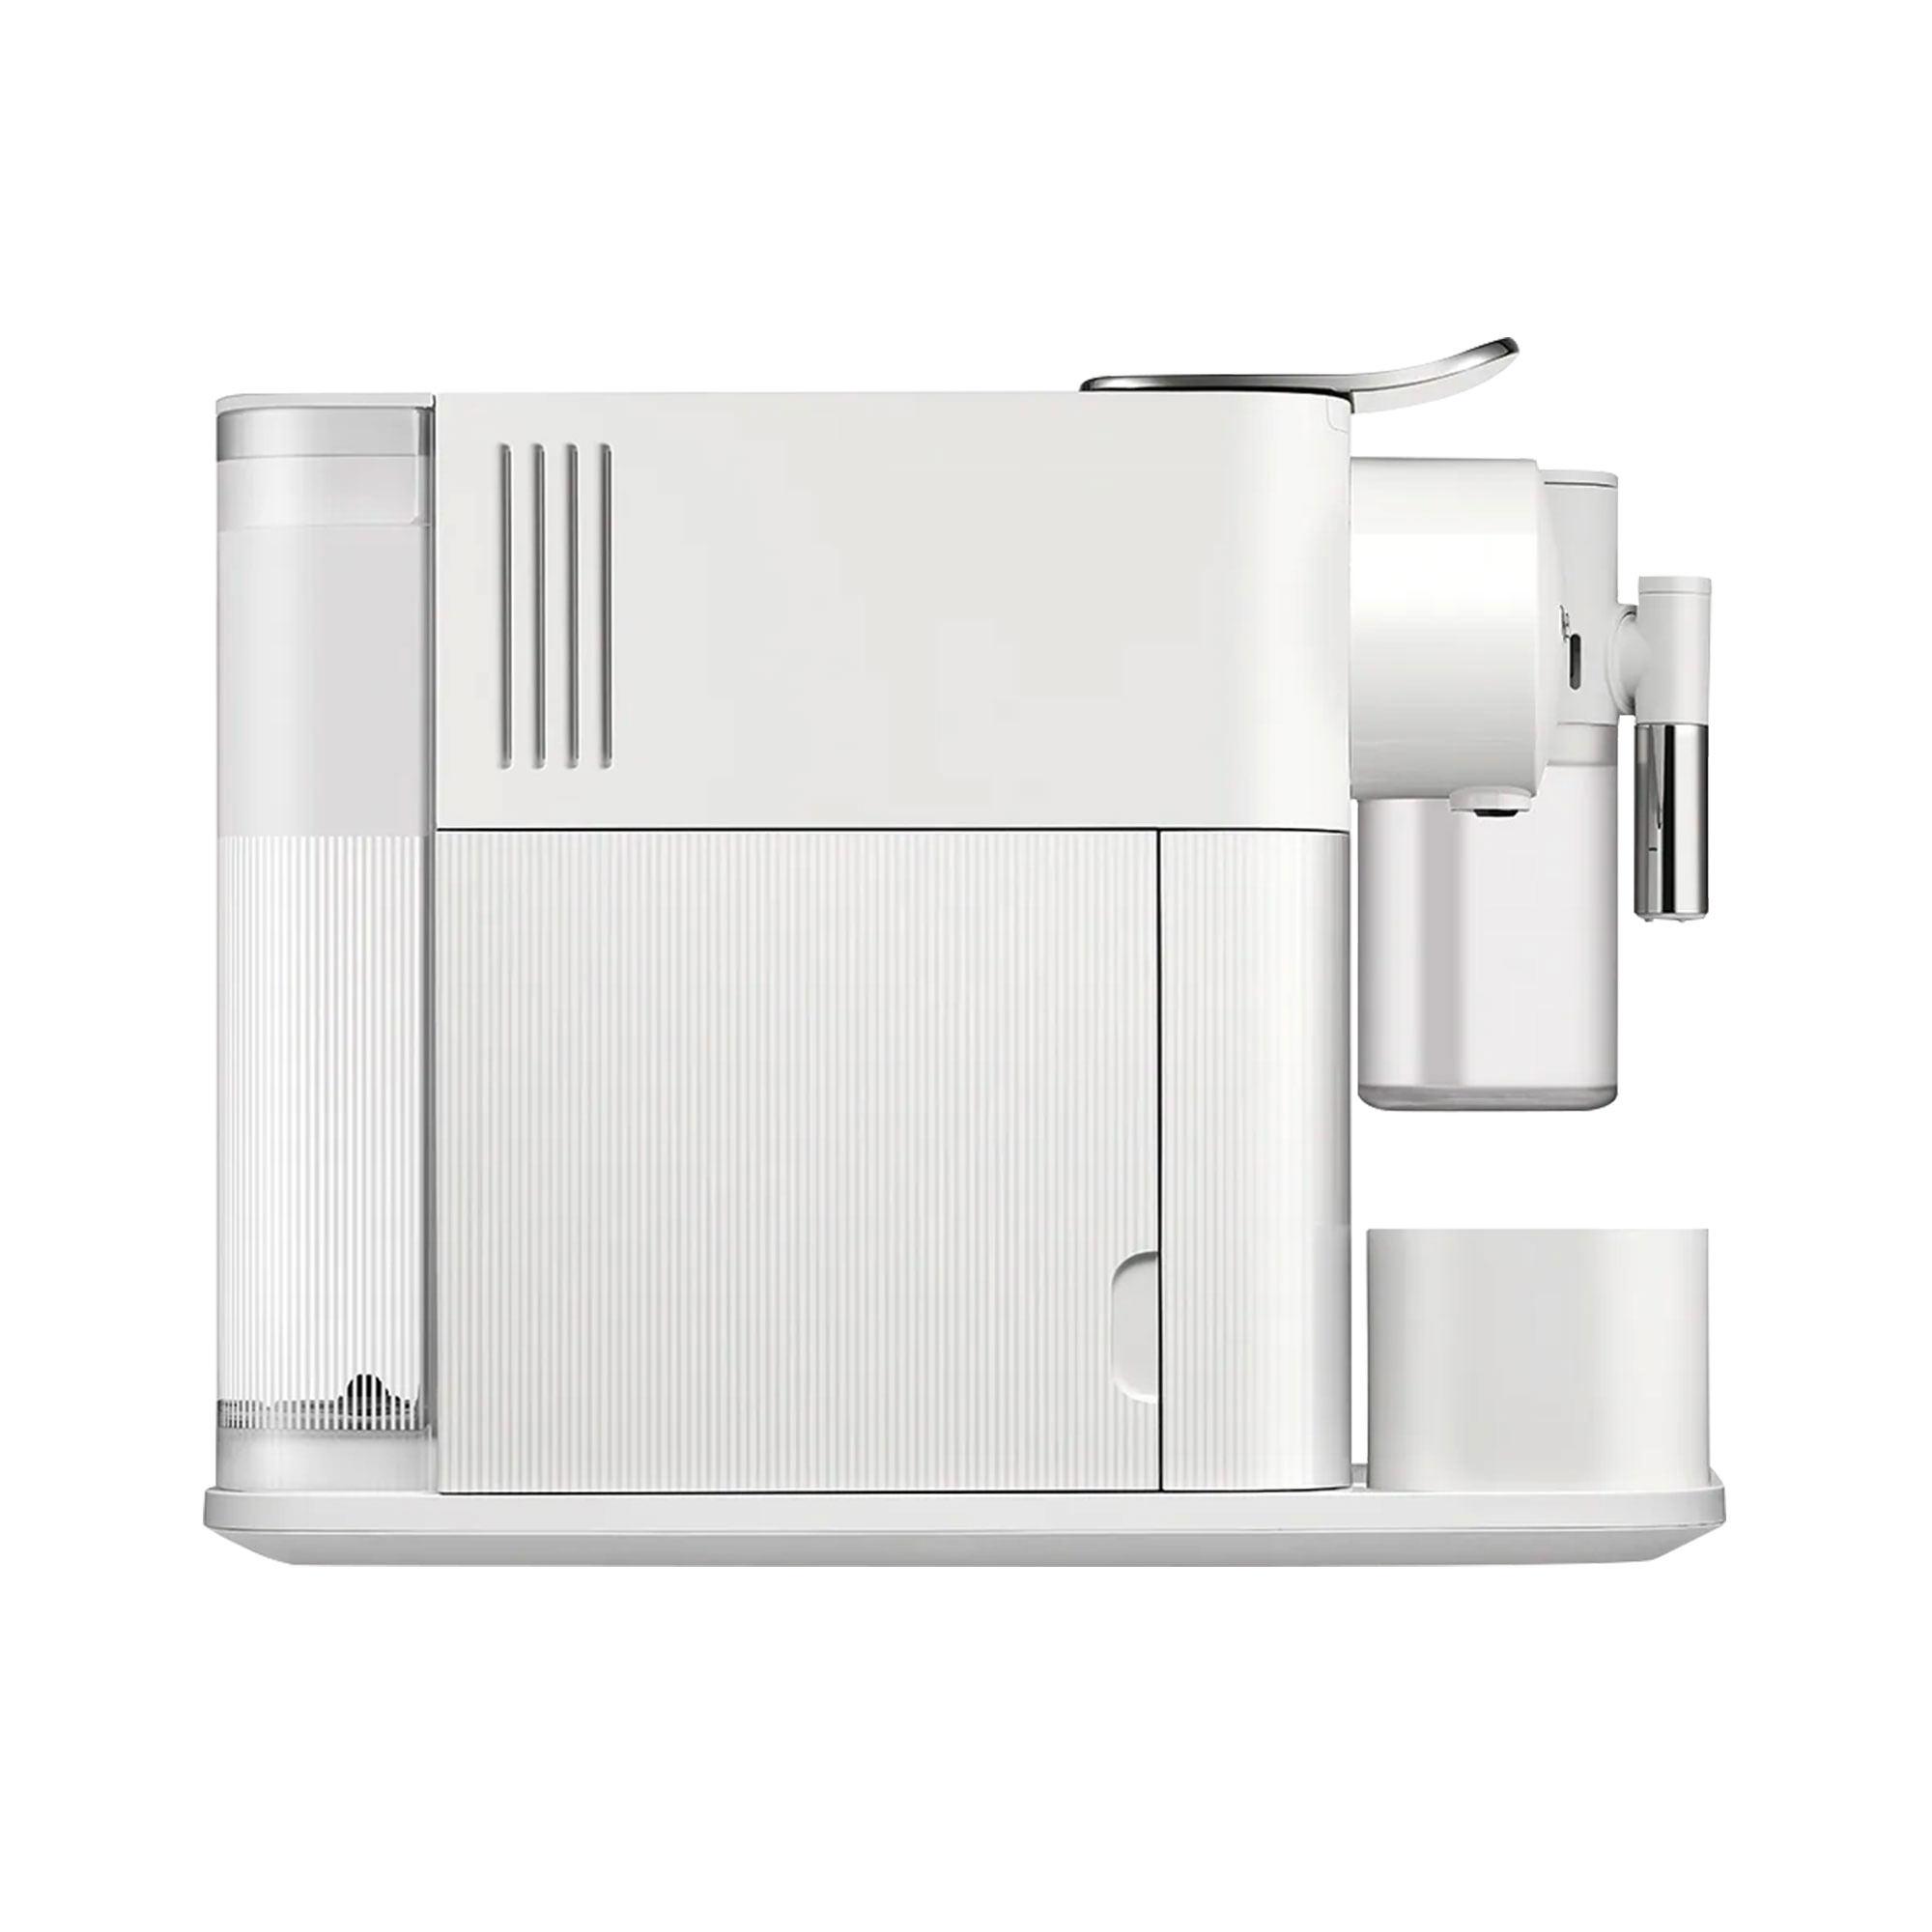 DeLonghi Nespresso Lattissima One EN510W Coffee Machine White Image 3